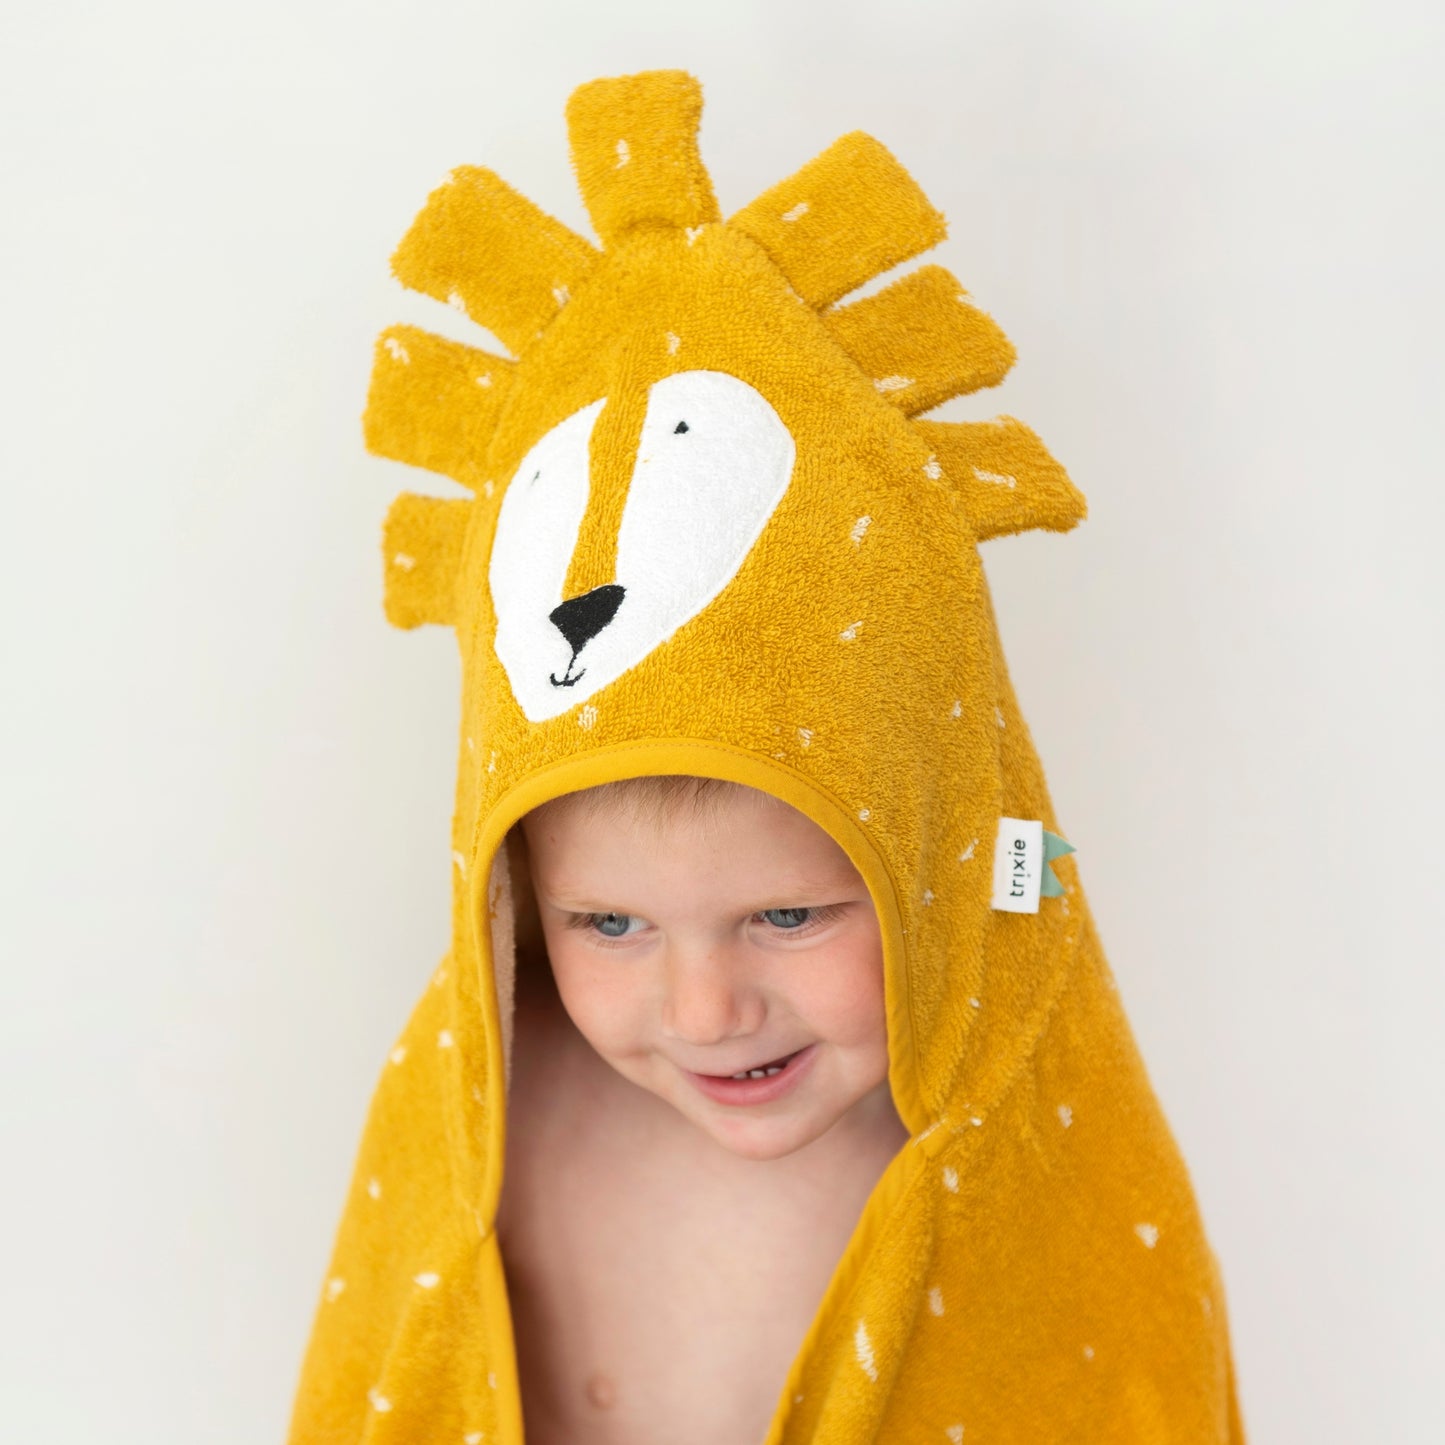 Hooded Towel "Mr. Lion"